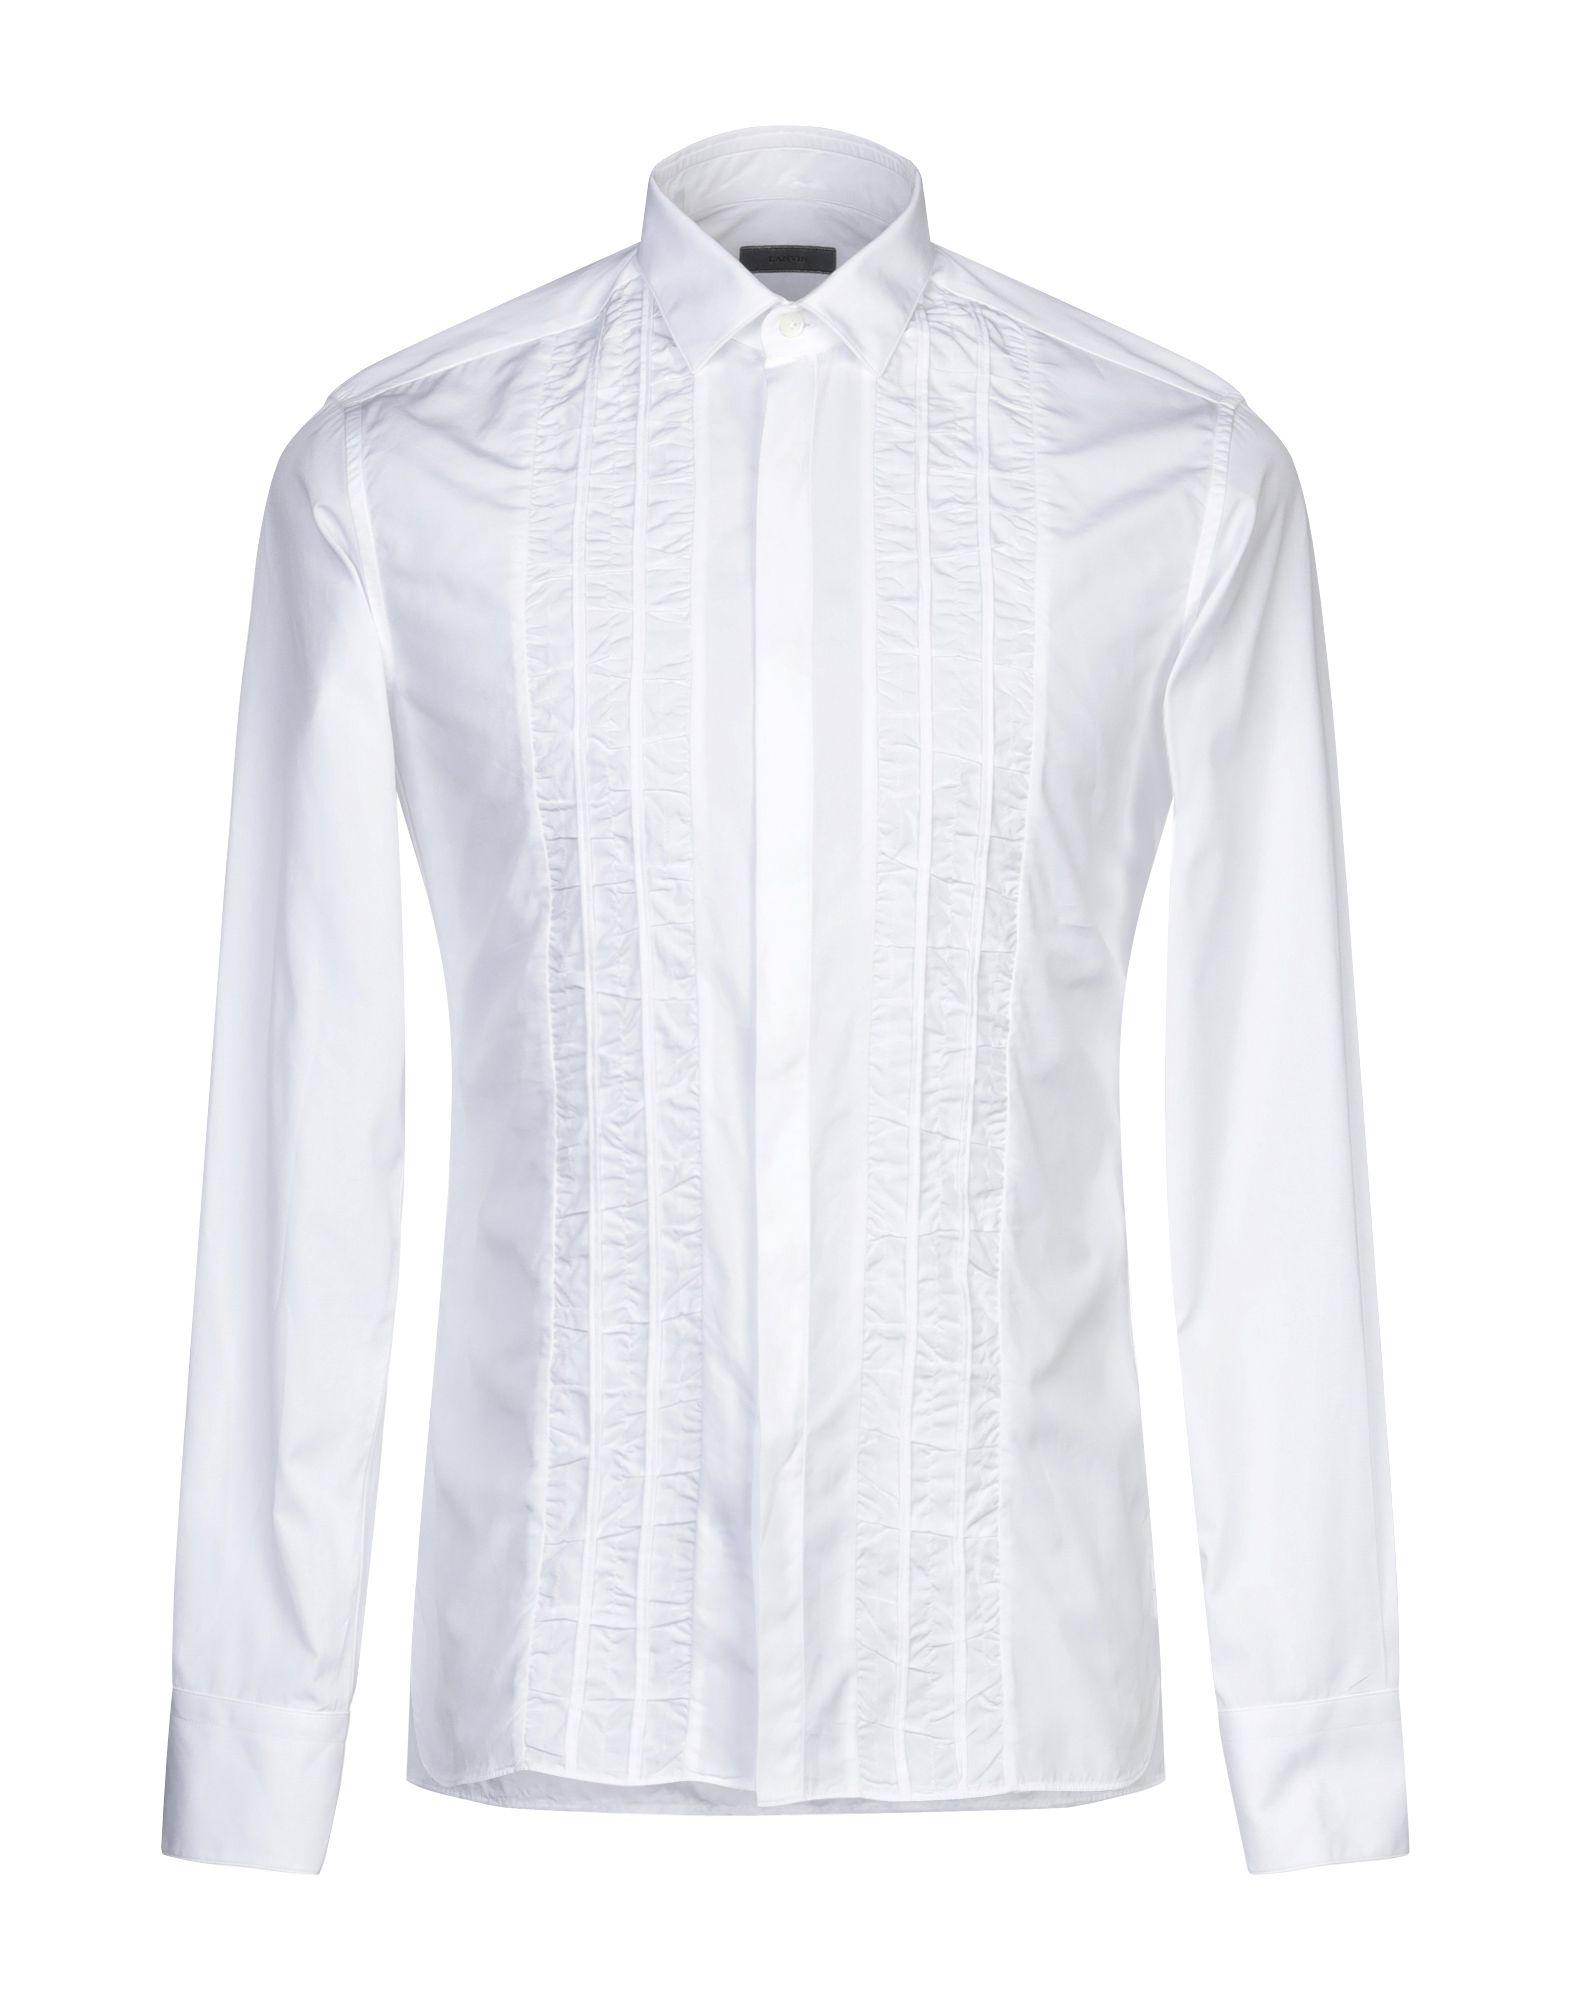 Lanvin Shirt in White for Men - Lyst